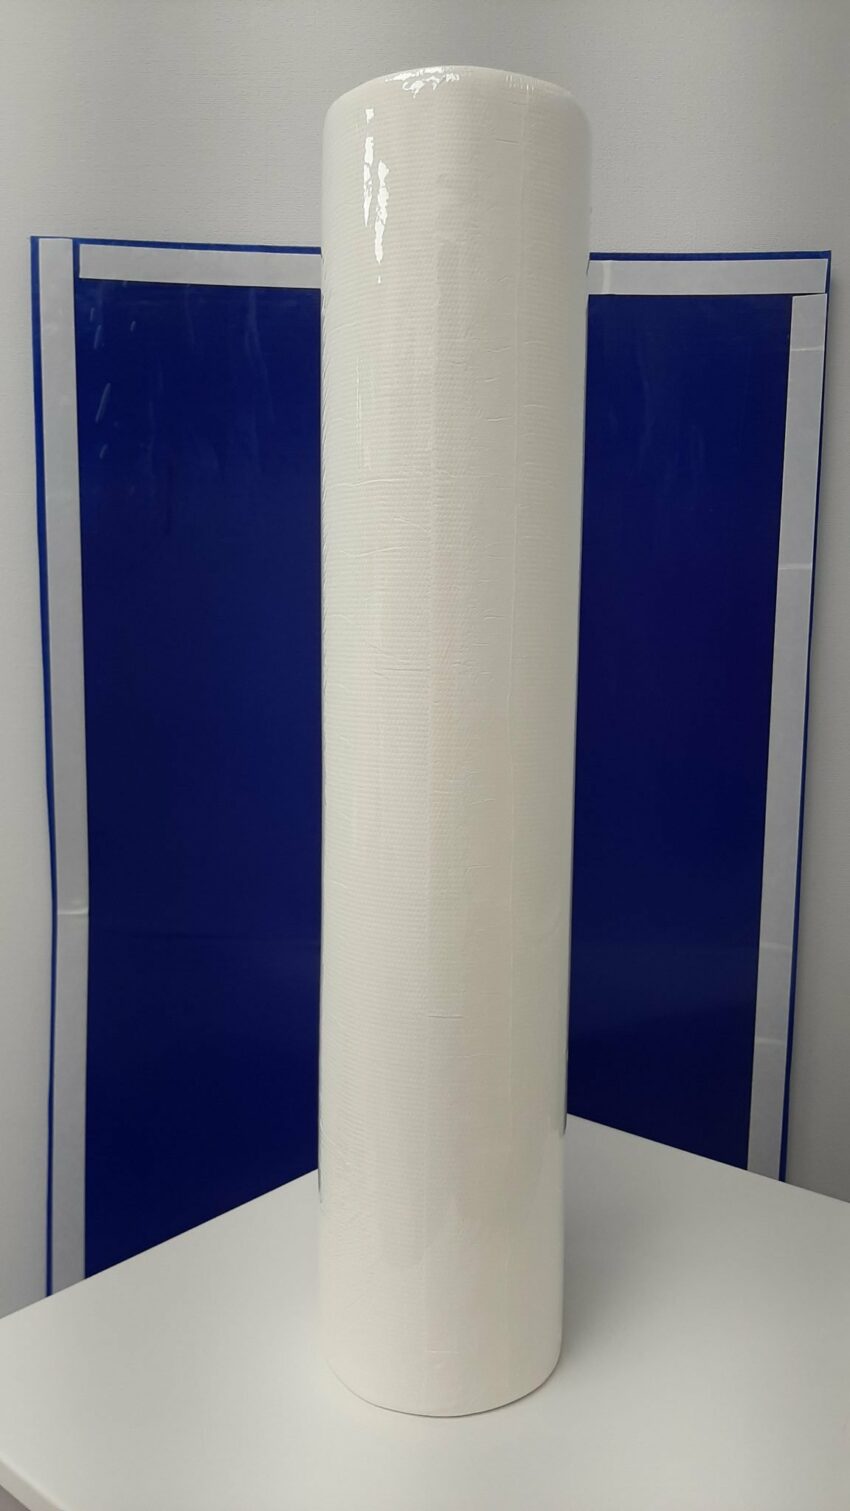 Papīra palagi "Papernet Over Soft", 50 m, 2 slāņi, art. 419287 ar antibakteriālo iedarbību (Sofidel) 2